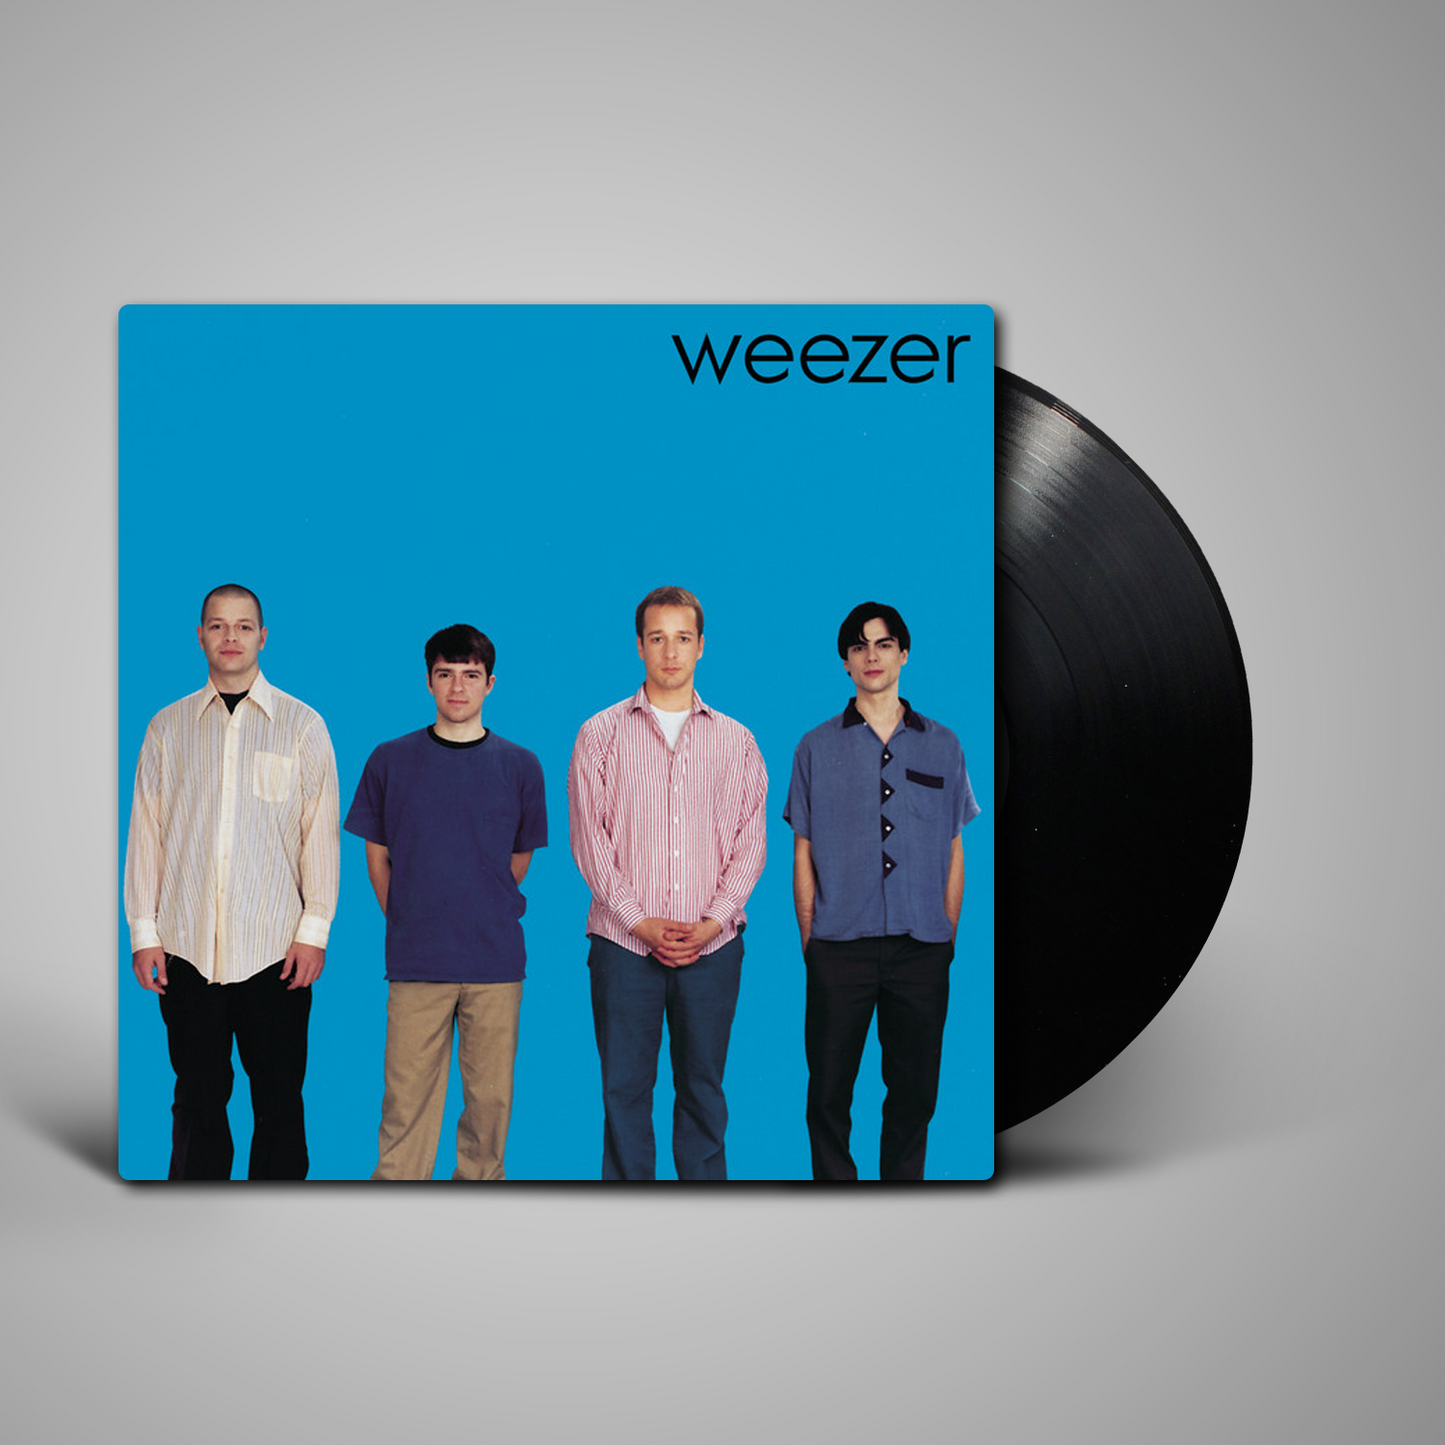 Weezer - S/T (Blue Album)